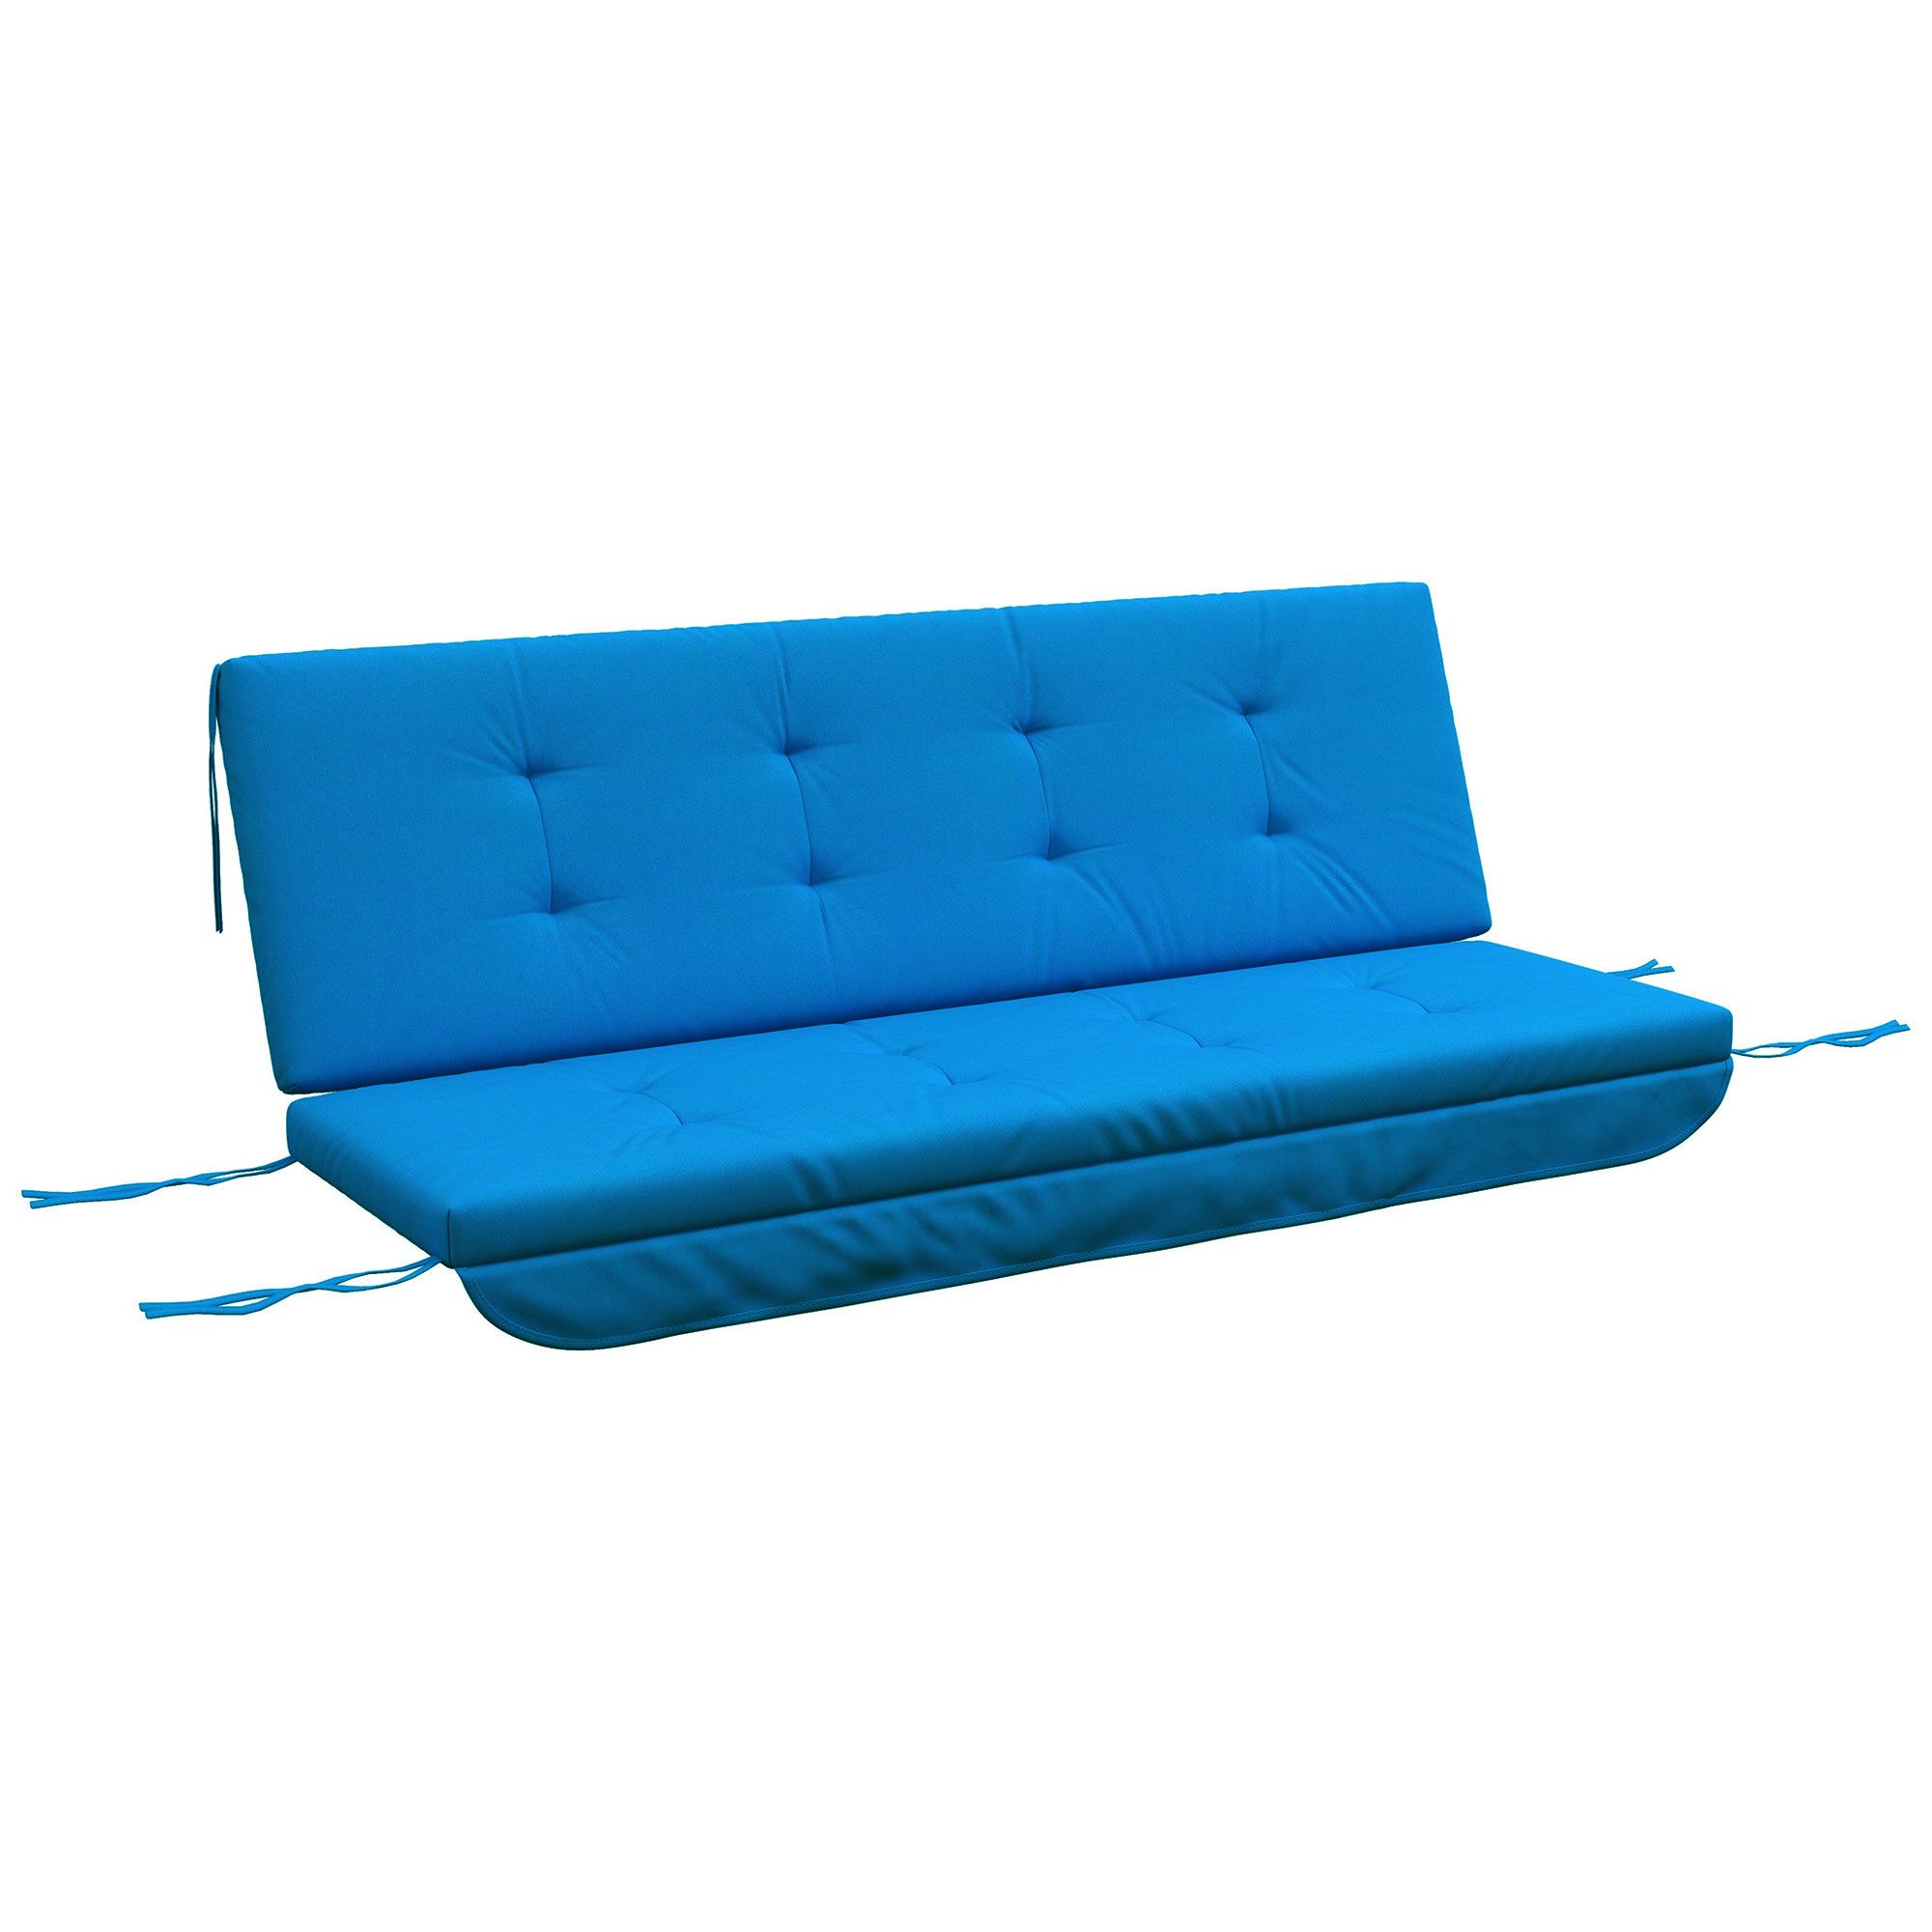 Outsunny Sitzkissen Auflagen-Set für Hollywoodschaukel 170 cm Gartenschaukel, Blau 170L x 100B x 8H cm